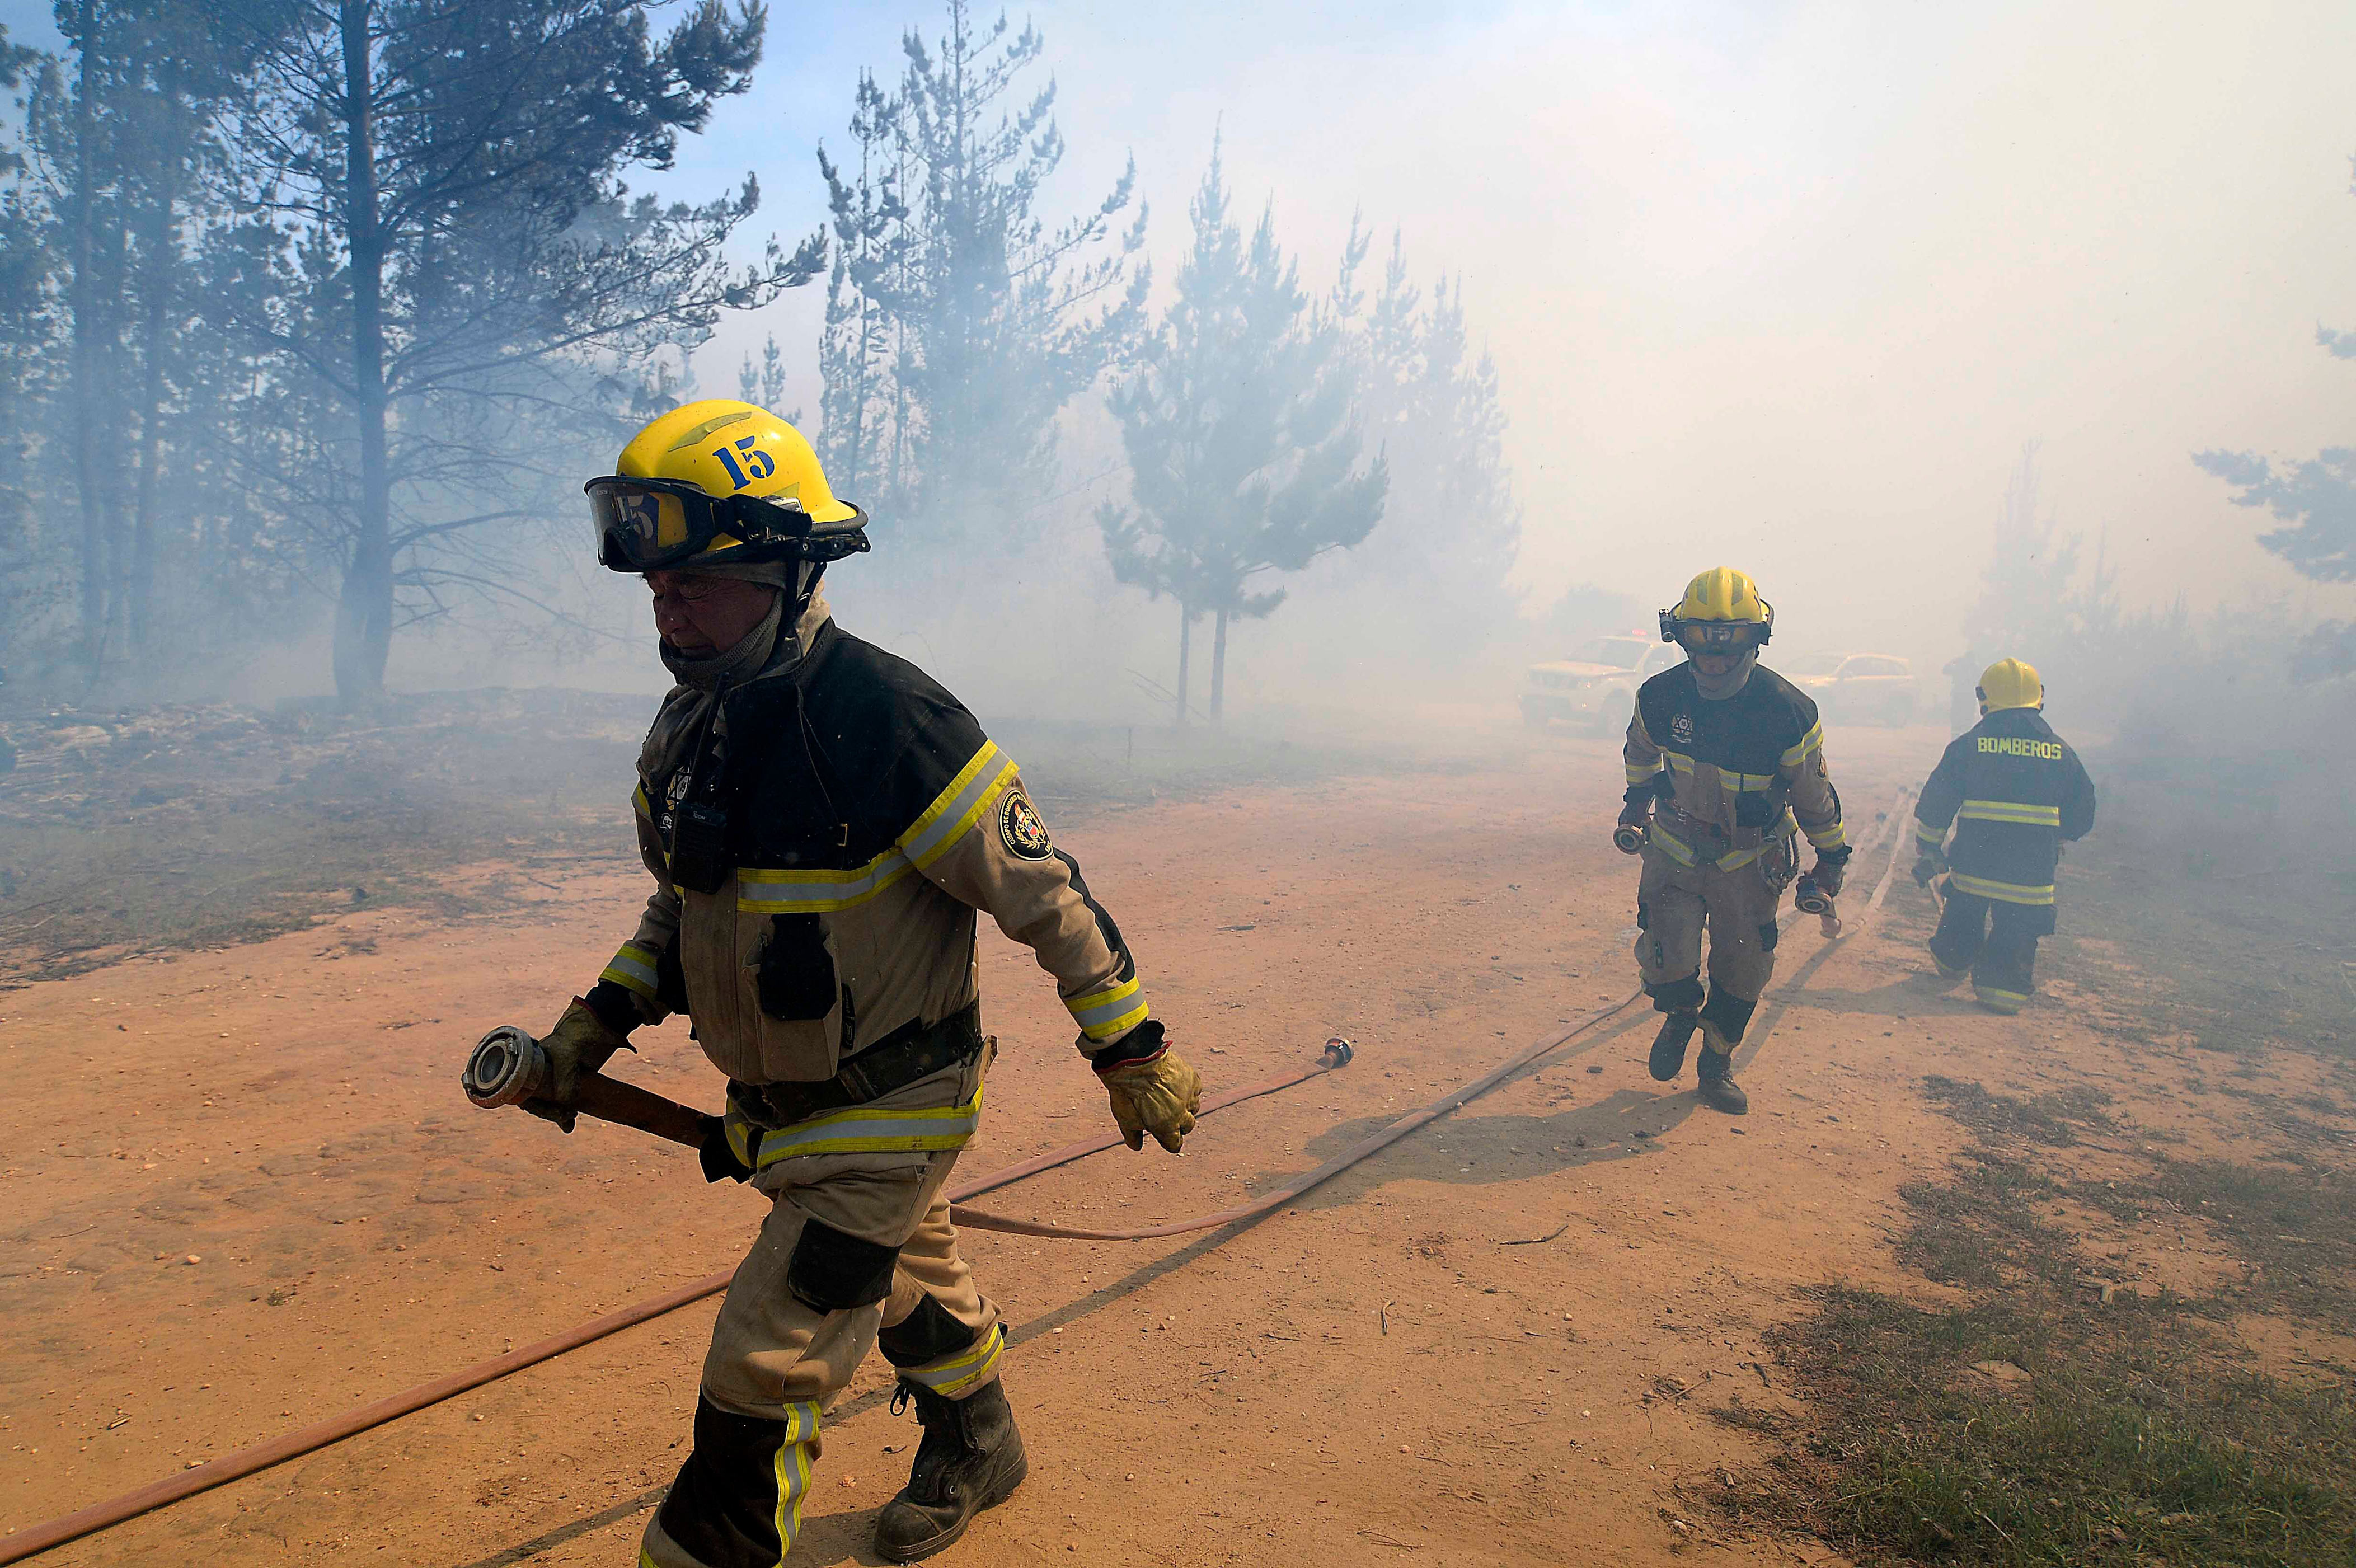 combaten incendio forestal en quilpué: siniestro ha afectado al menos 15 hectáreas